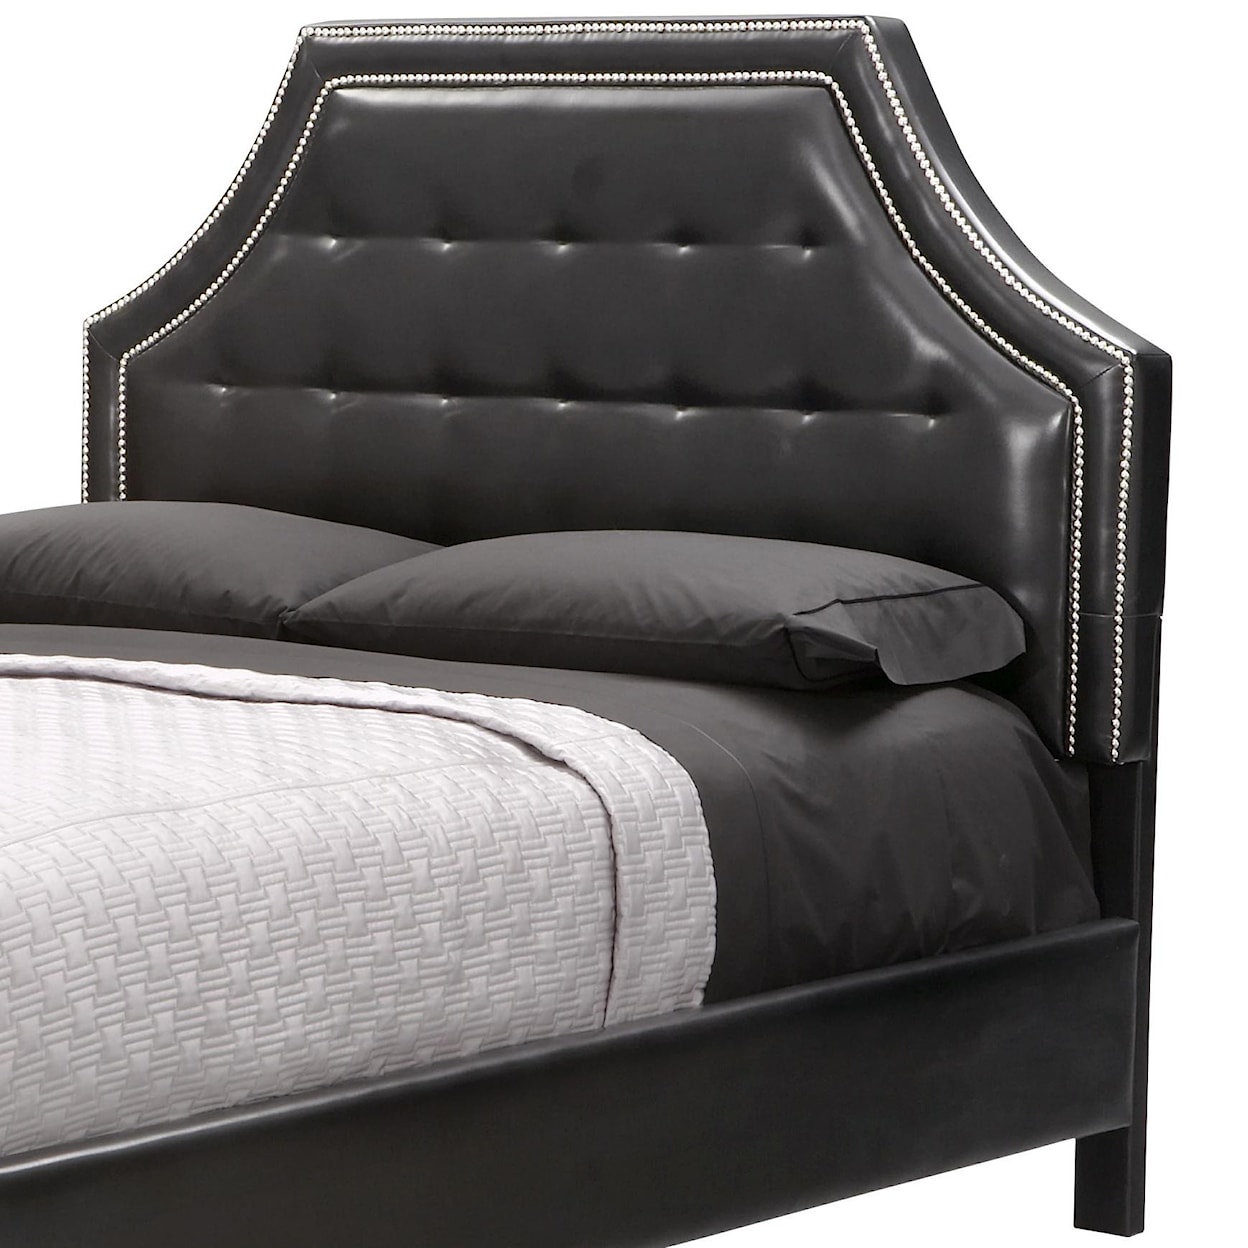 Standard Furniture Wilshire Boulevard Queen Upholstered Black Headboard